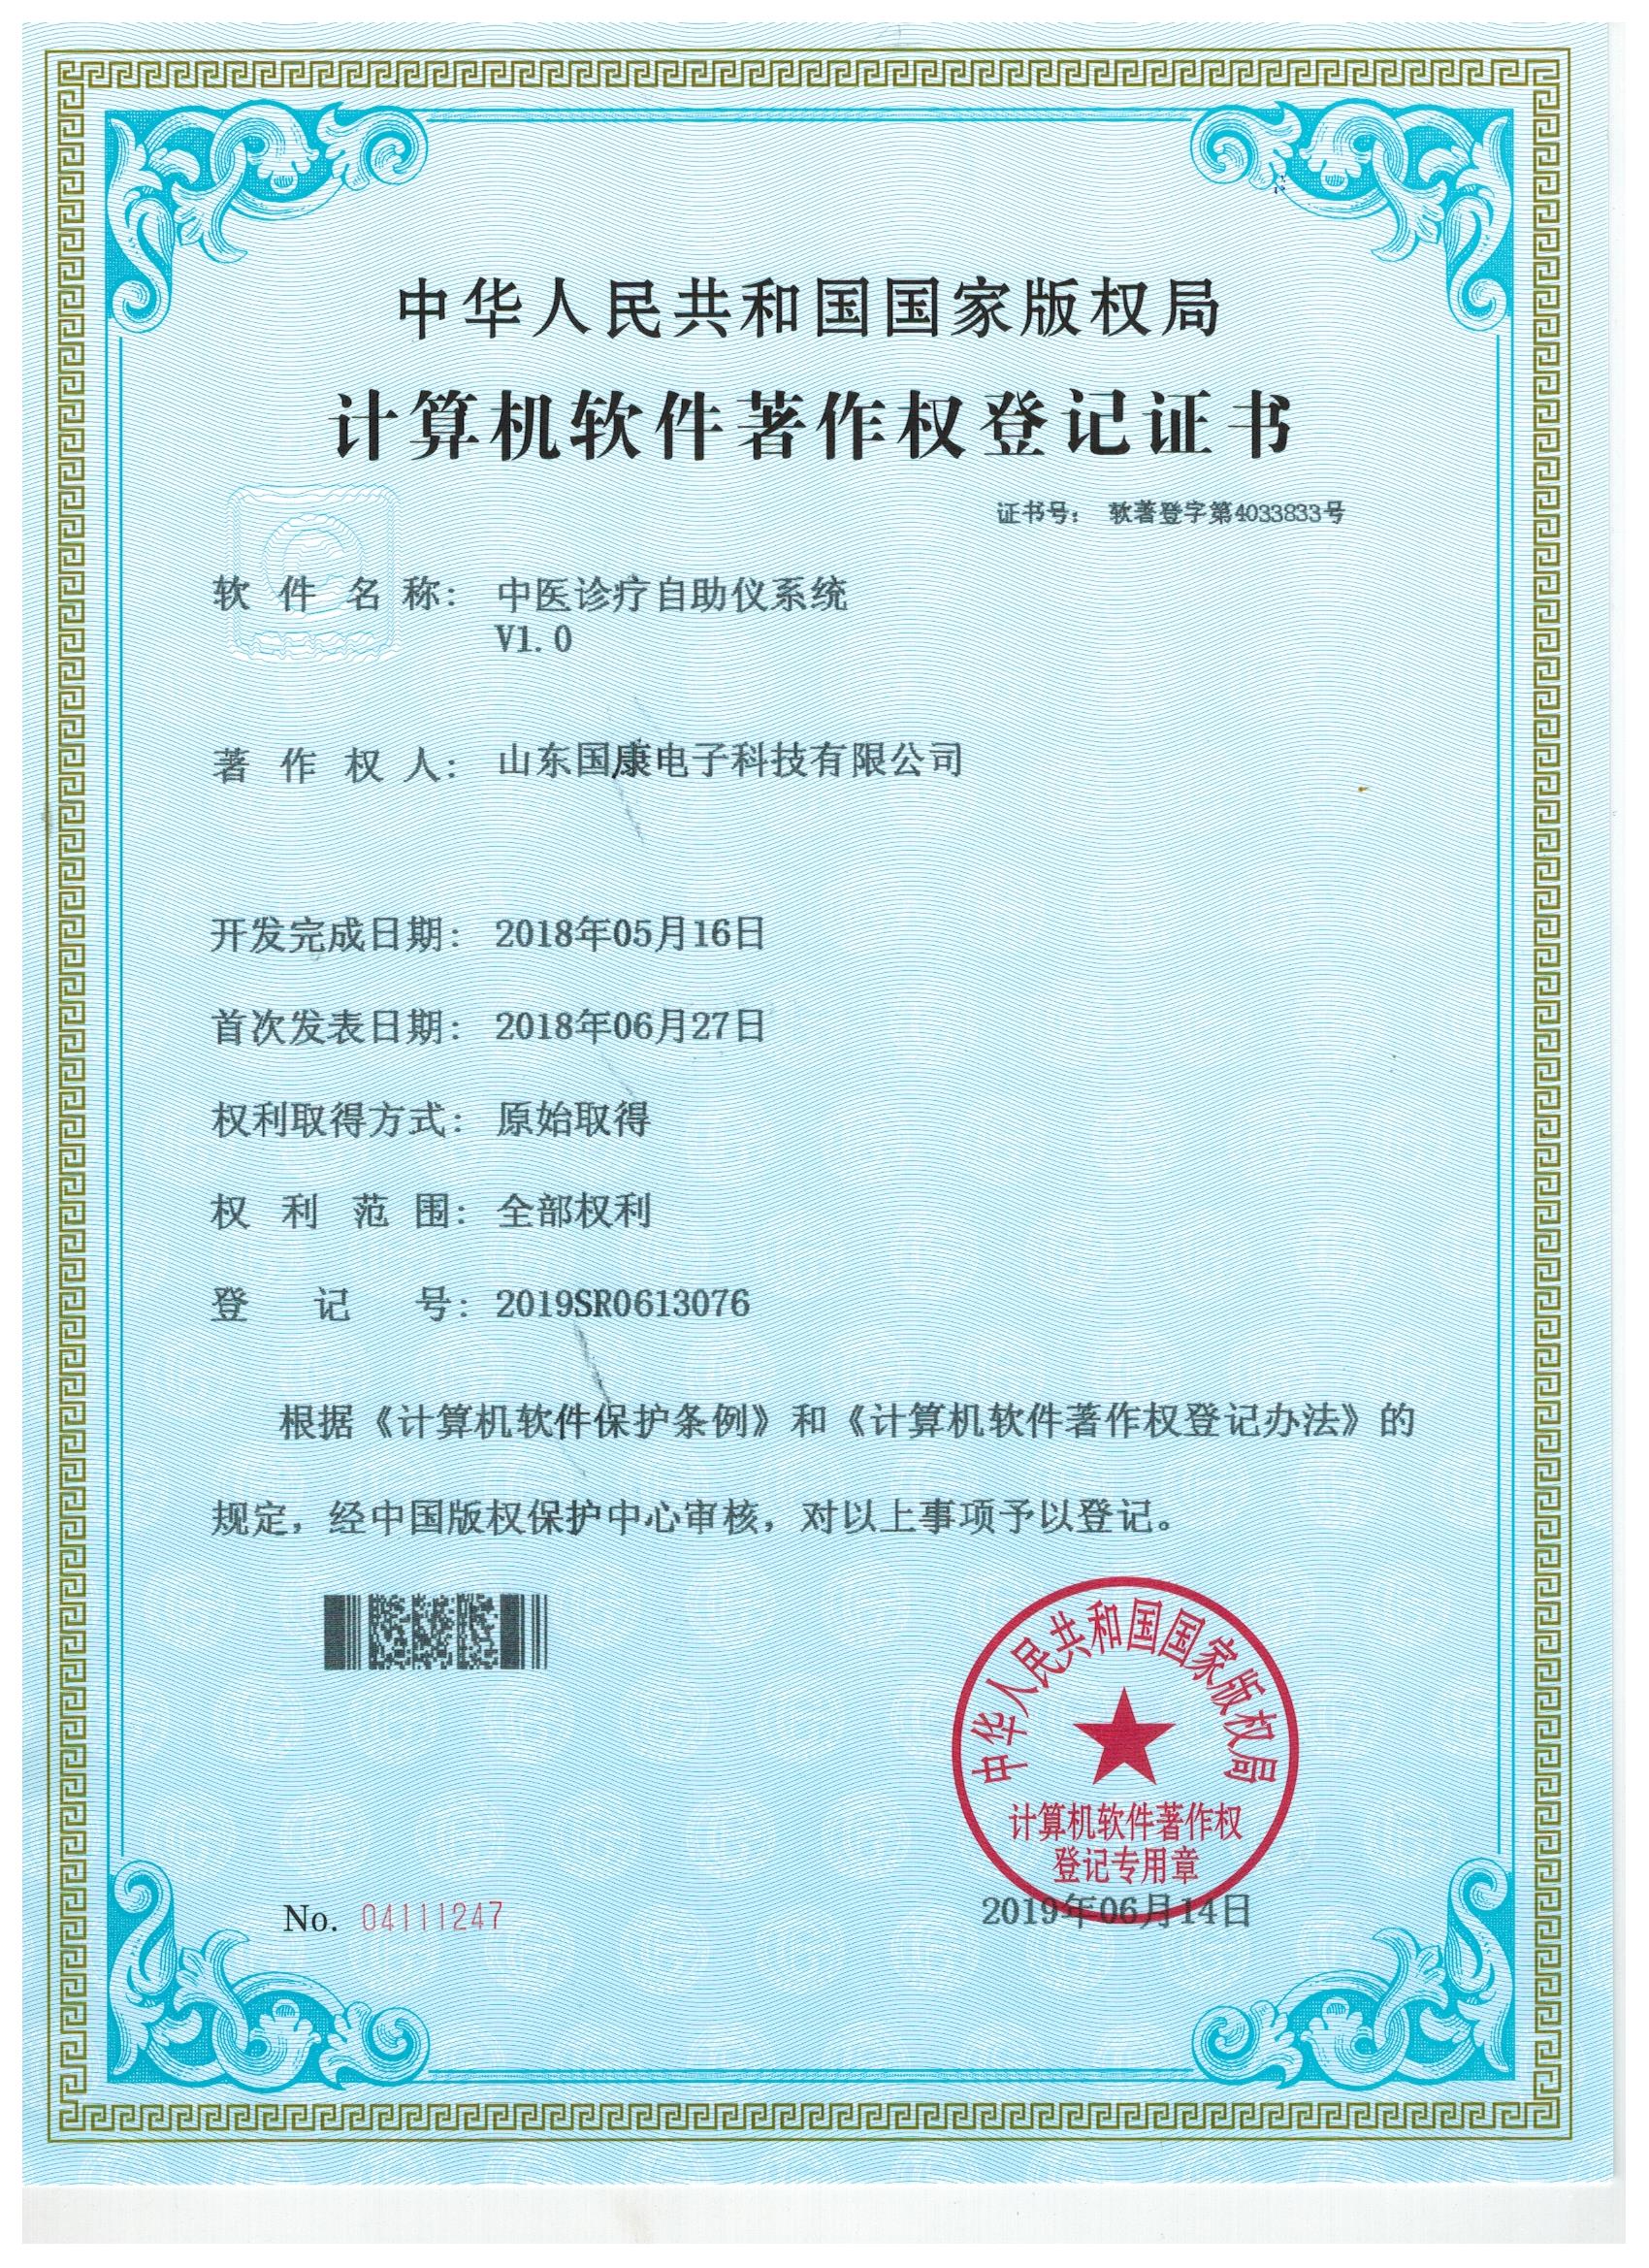 中医体质辨识仪器-中医诊疗自助仪系统证书